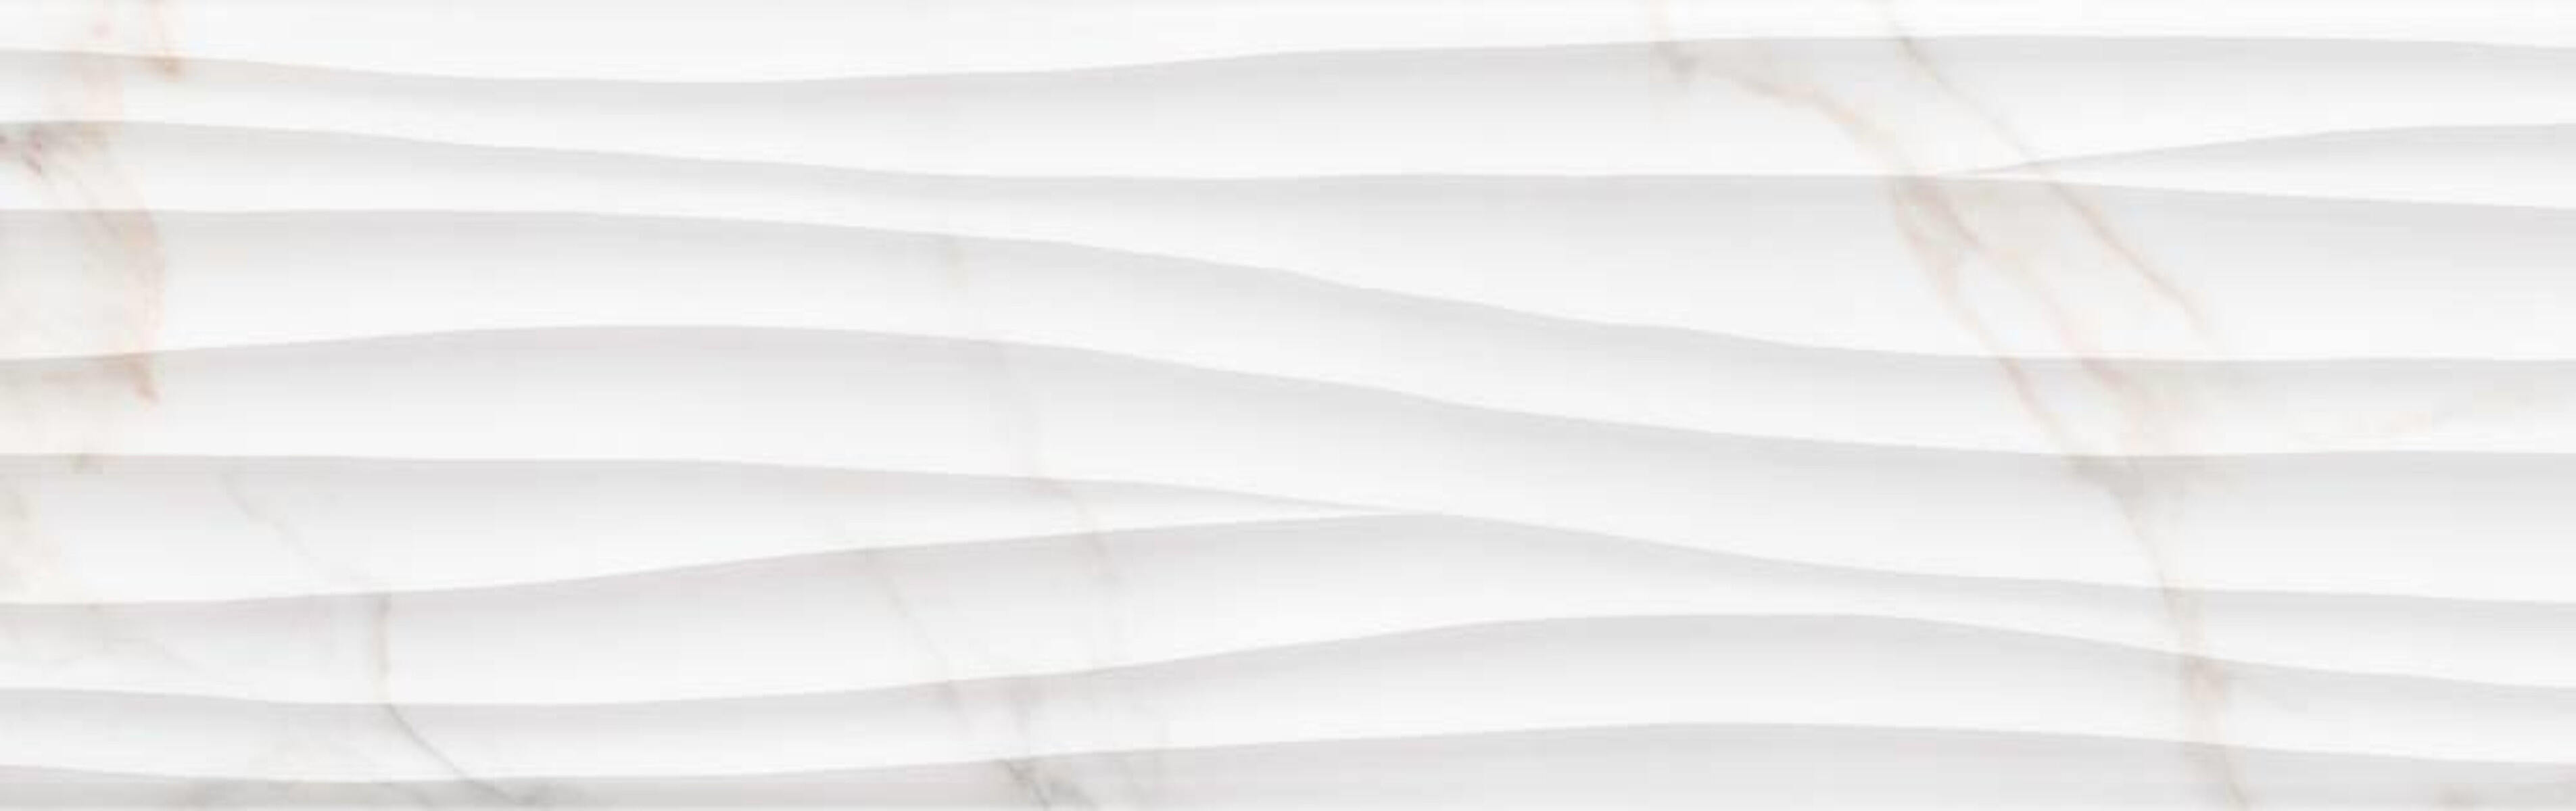 Piastrella per rivestimenti Marmorea Abaco Cal 31.5 x 100 cm sp. 8.7 mm bianco - 1